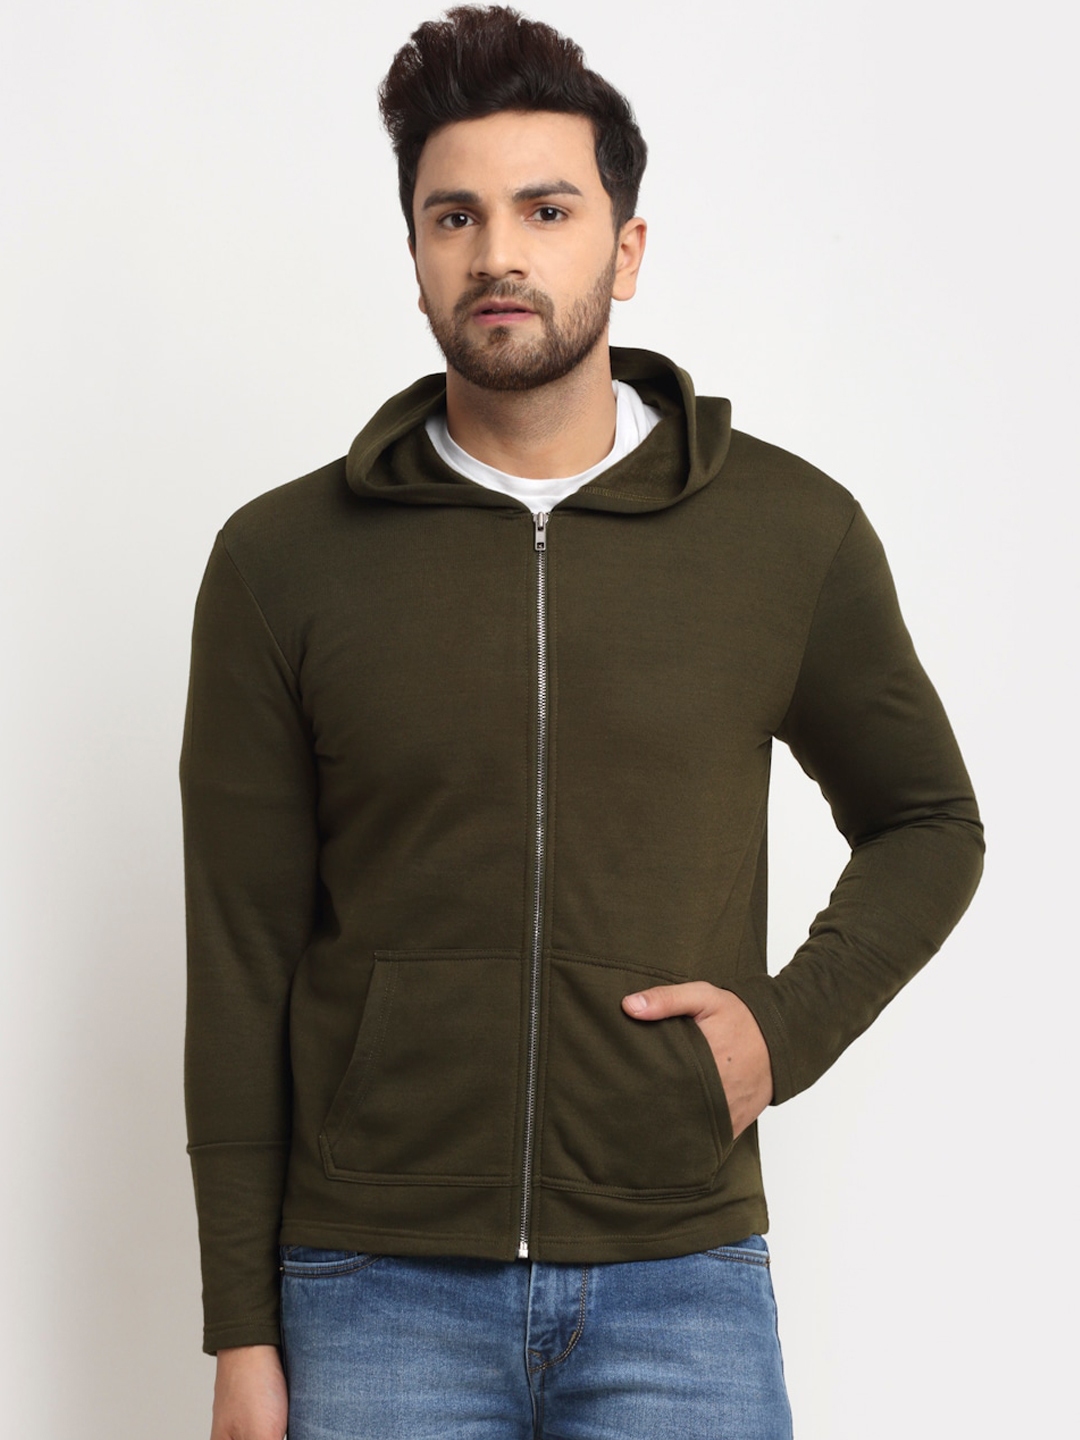 Buy DOOR74 Men Olive Green Hooded Sweatshirt - Sweatshirts for Men ...